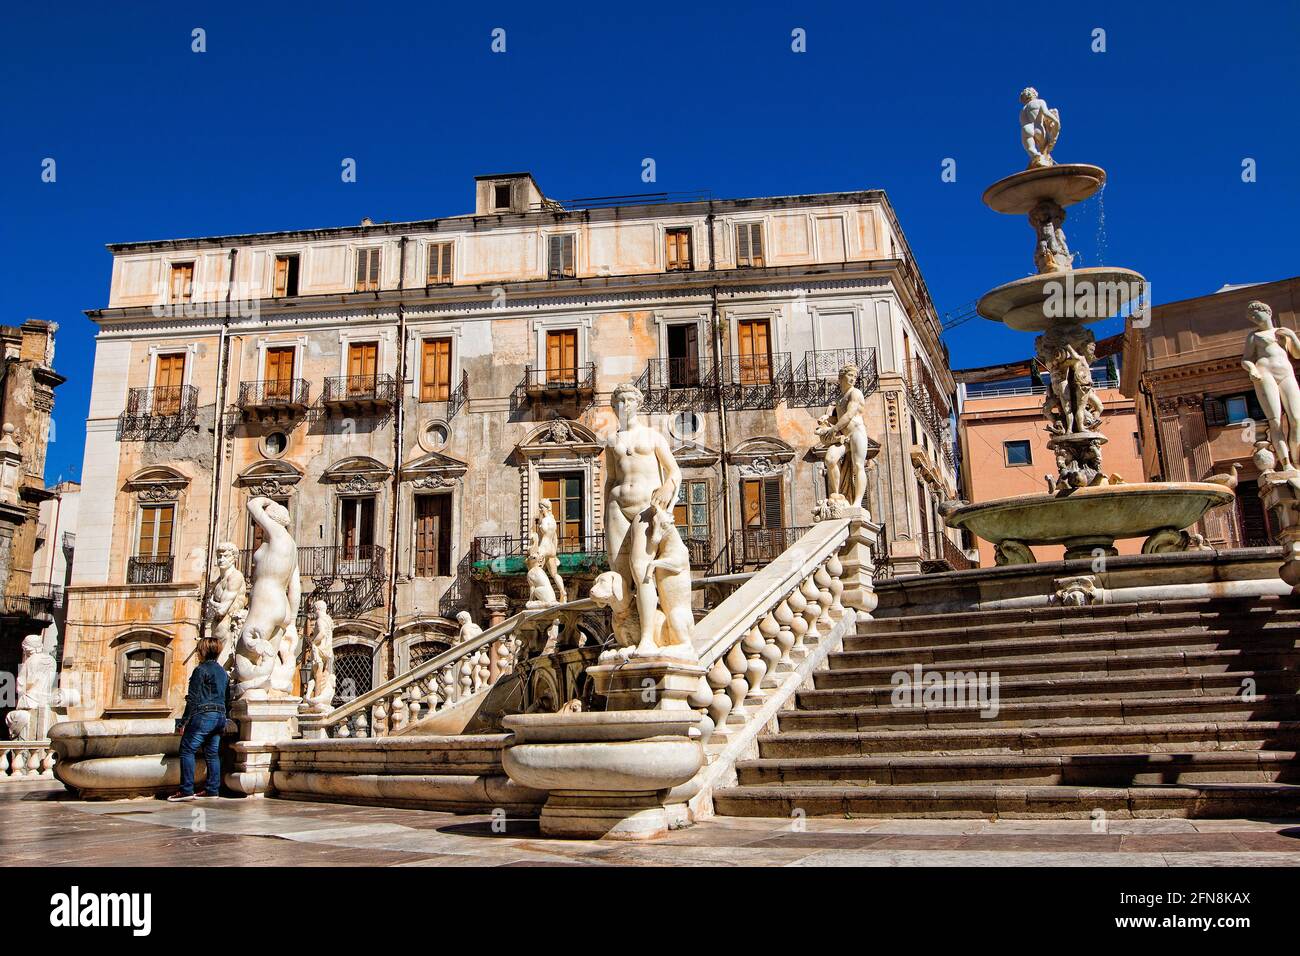 Fontana Pretoria de Palermo, Sicilia Foto de stock